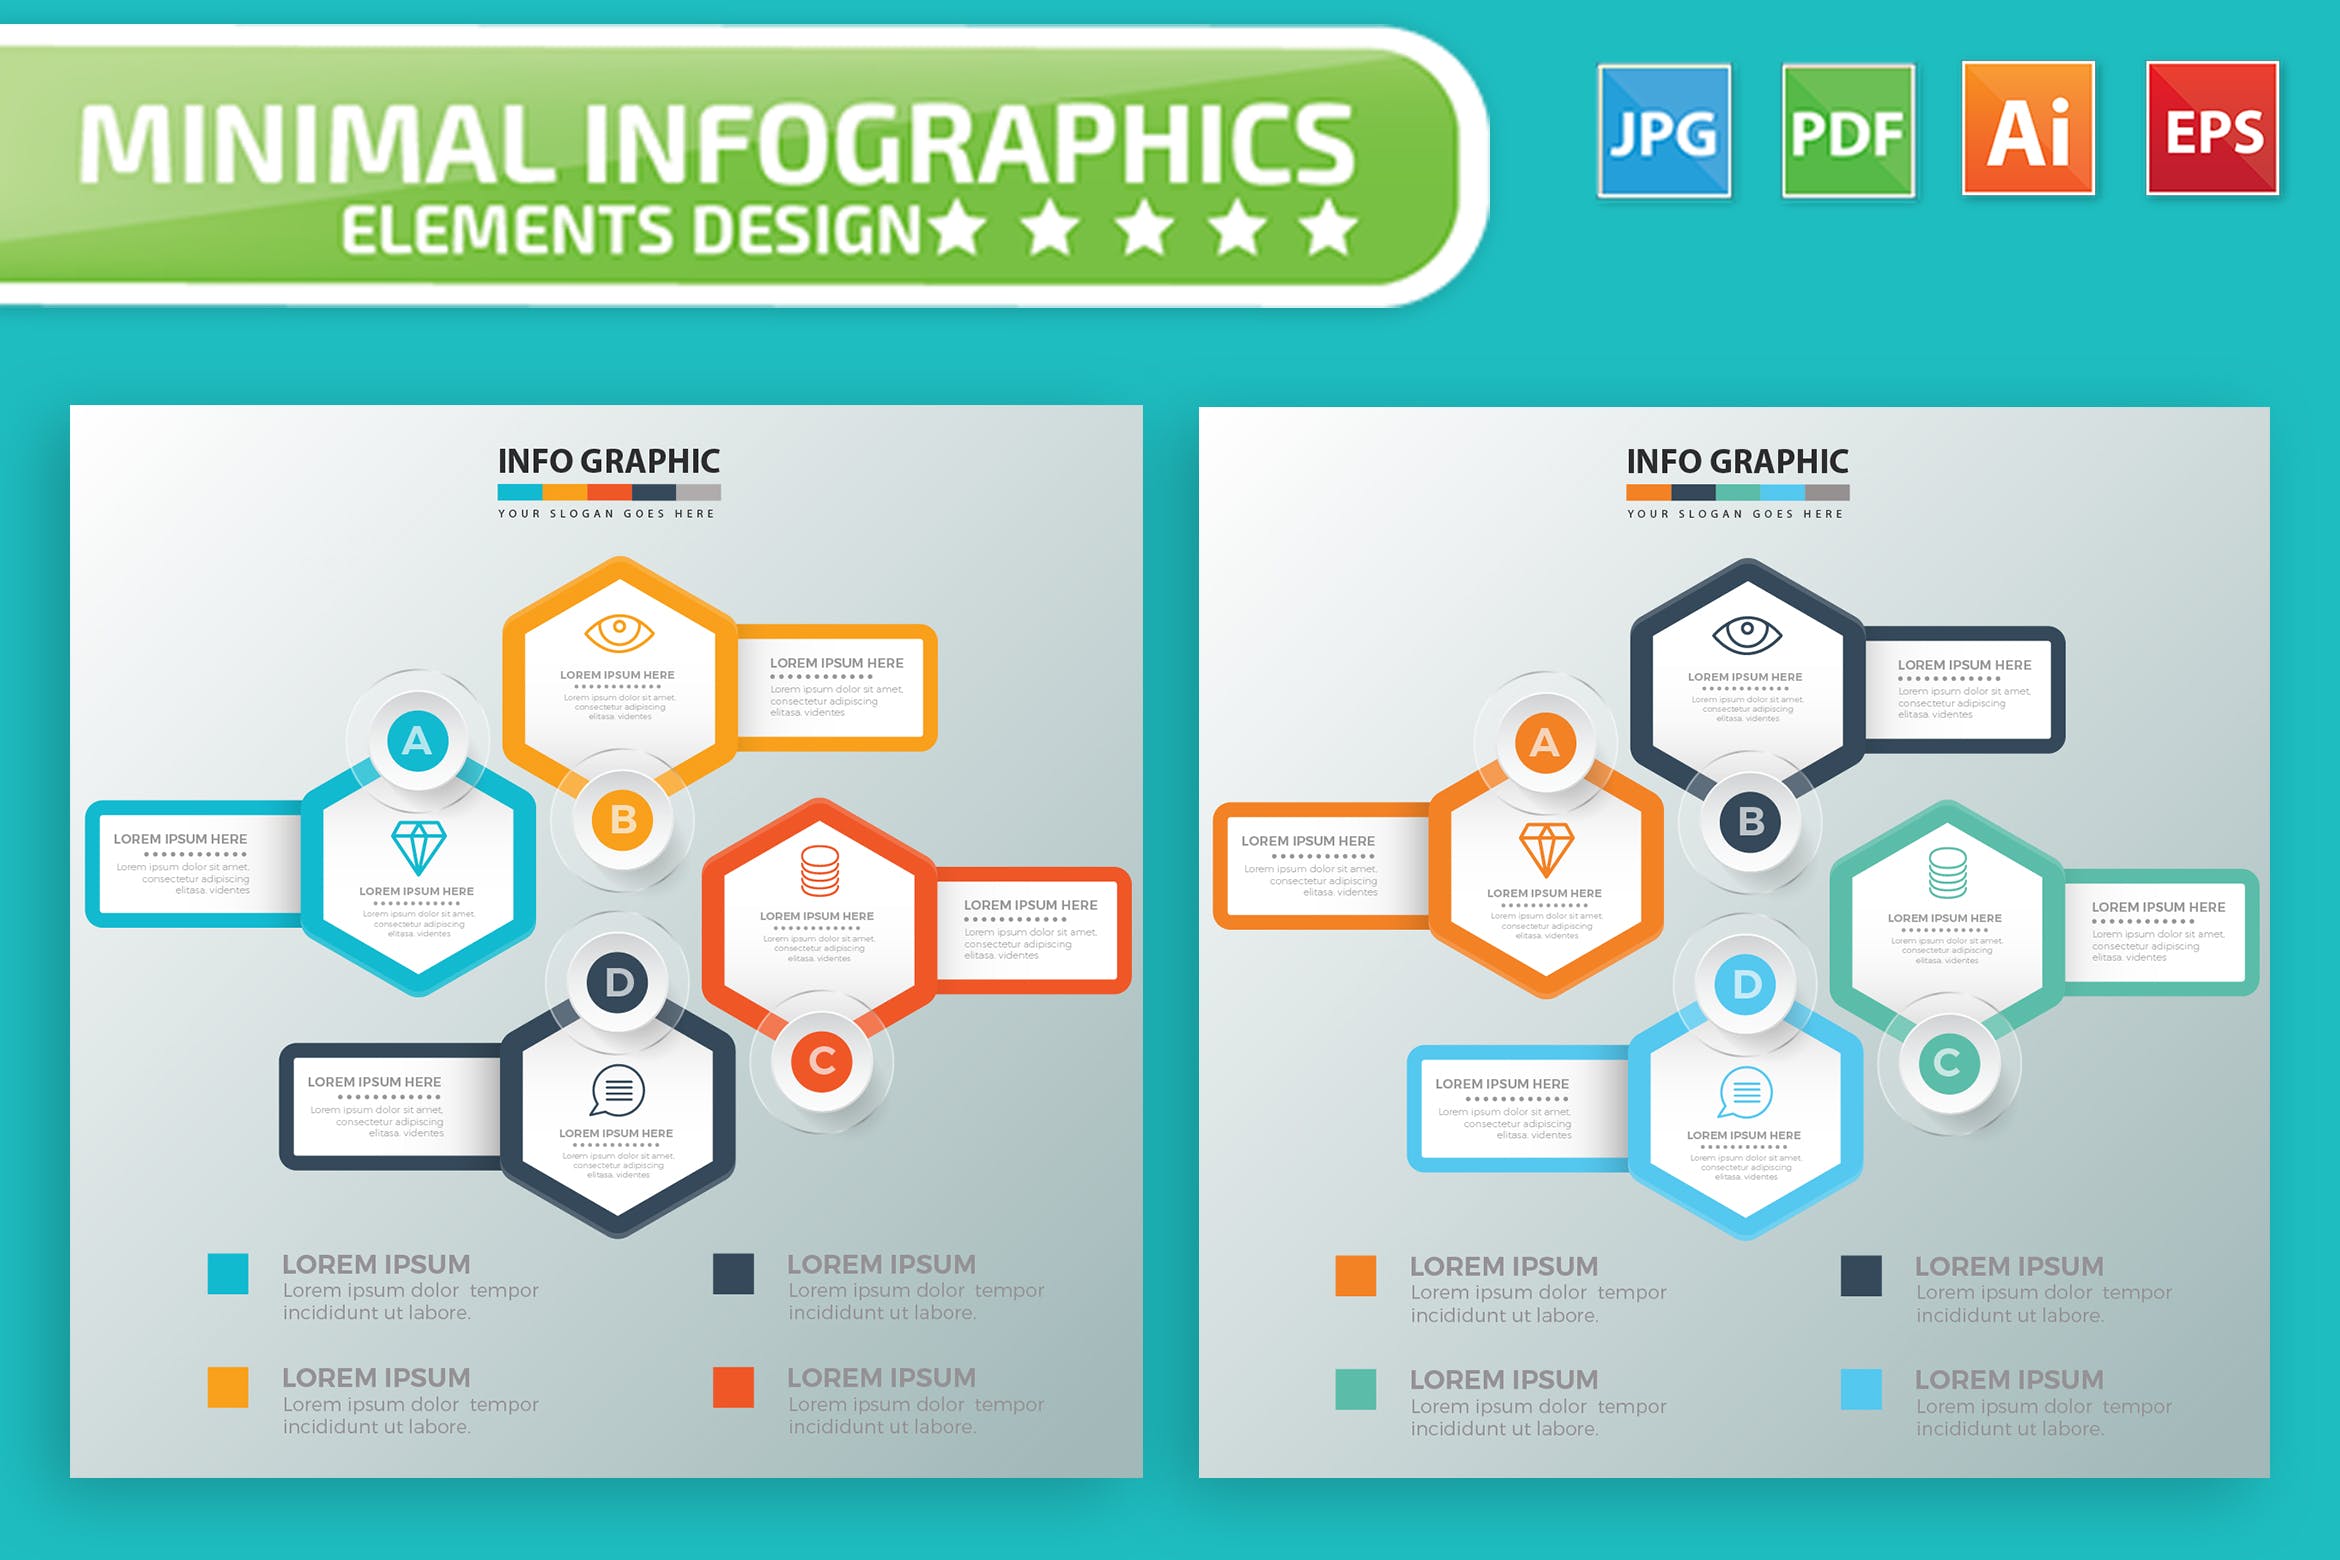 要点说明/重要特征信息图表矢量图形蚂蚁素材精选素材v7 Infographic Elements Design插图